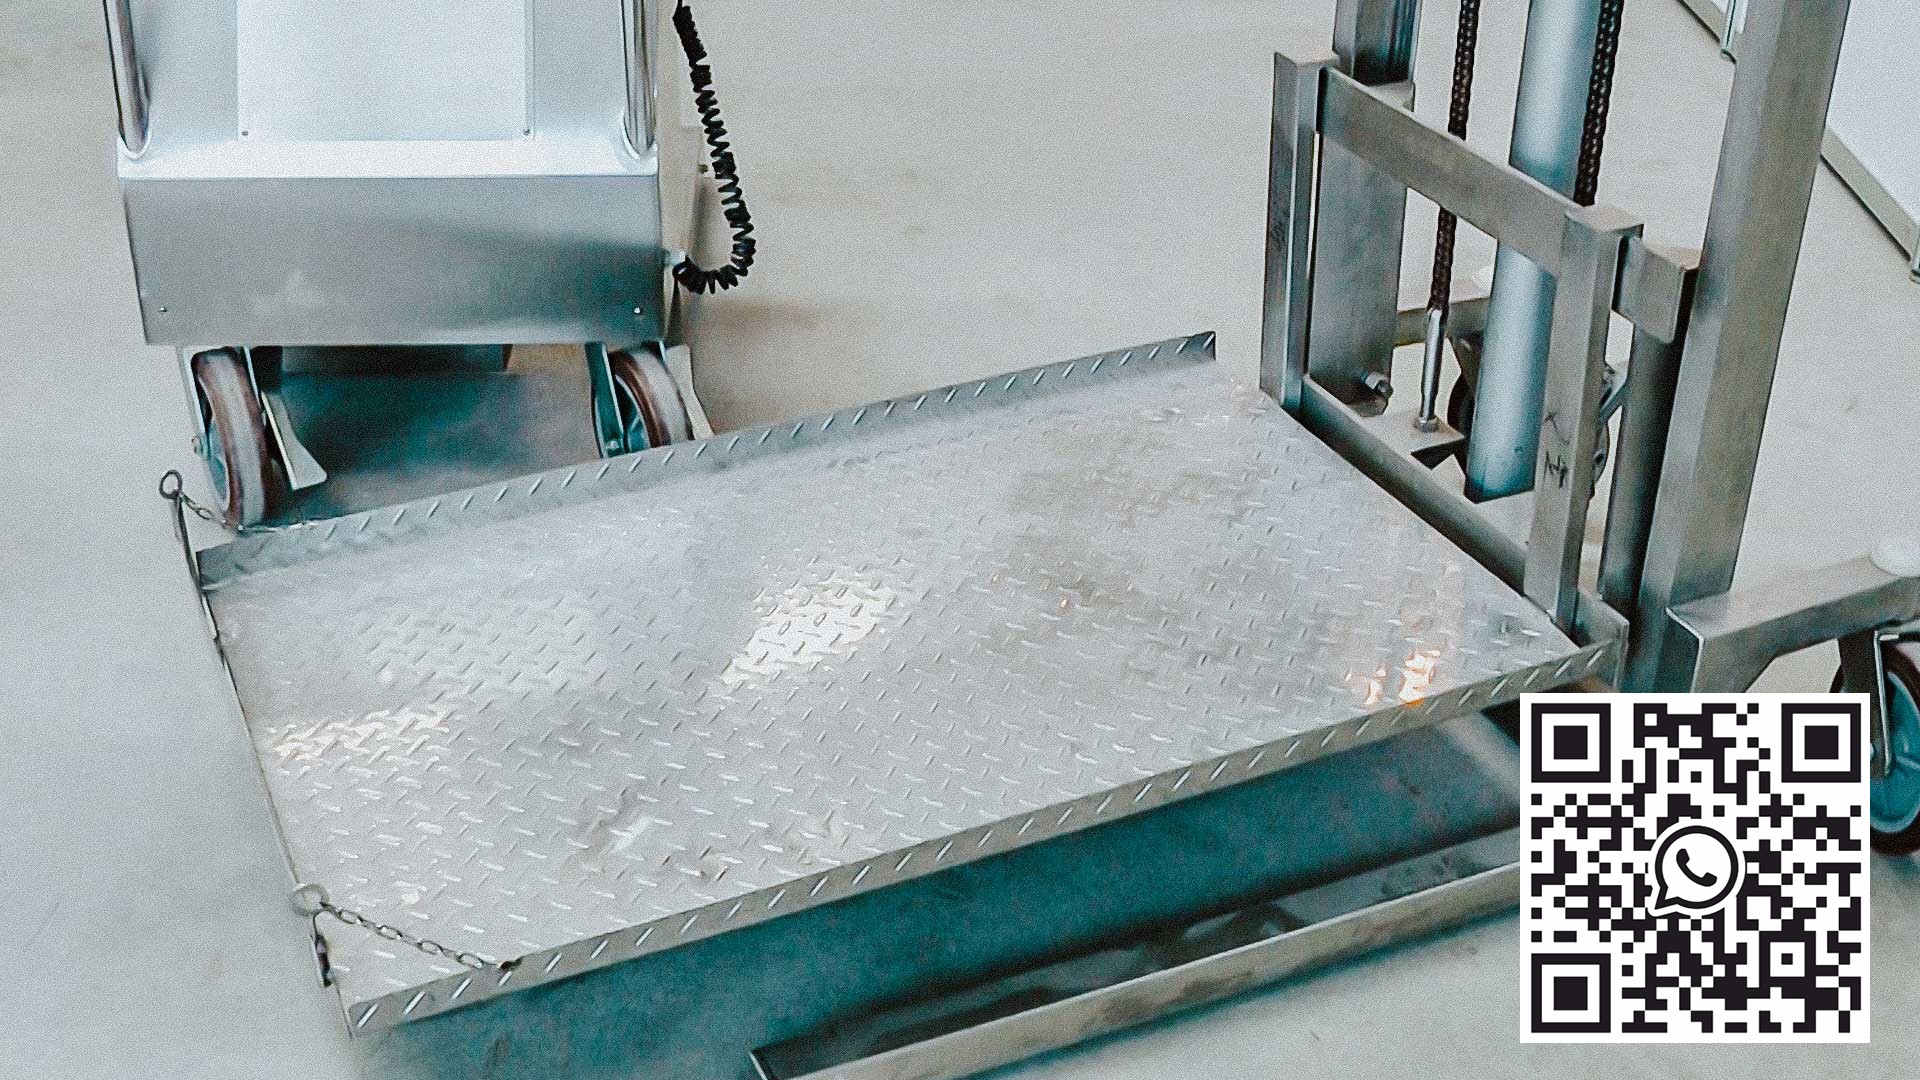 Ramassage automatique des conteneurs de poudre dans une usine pharmaceutique